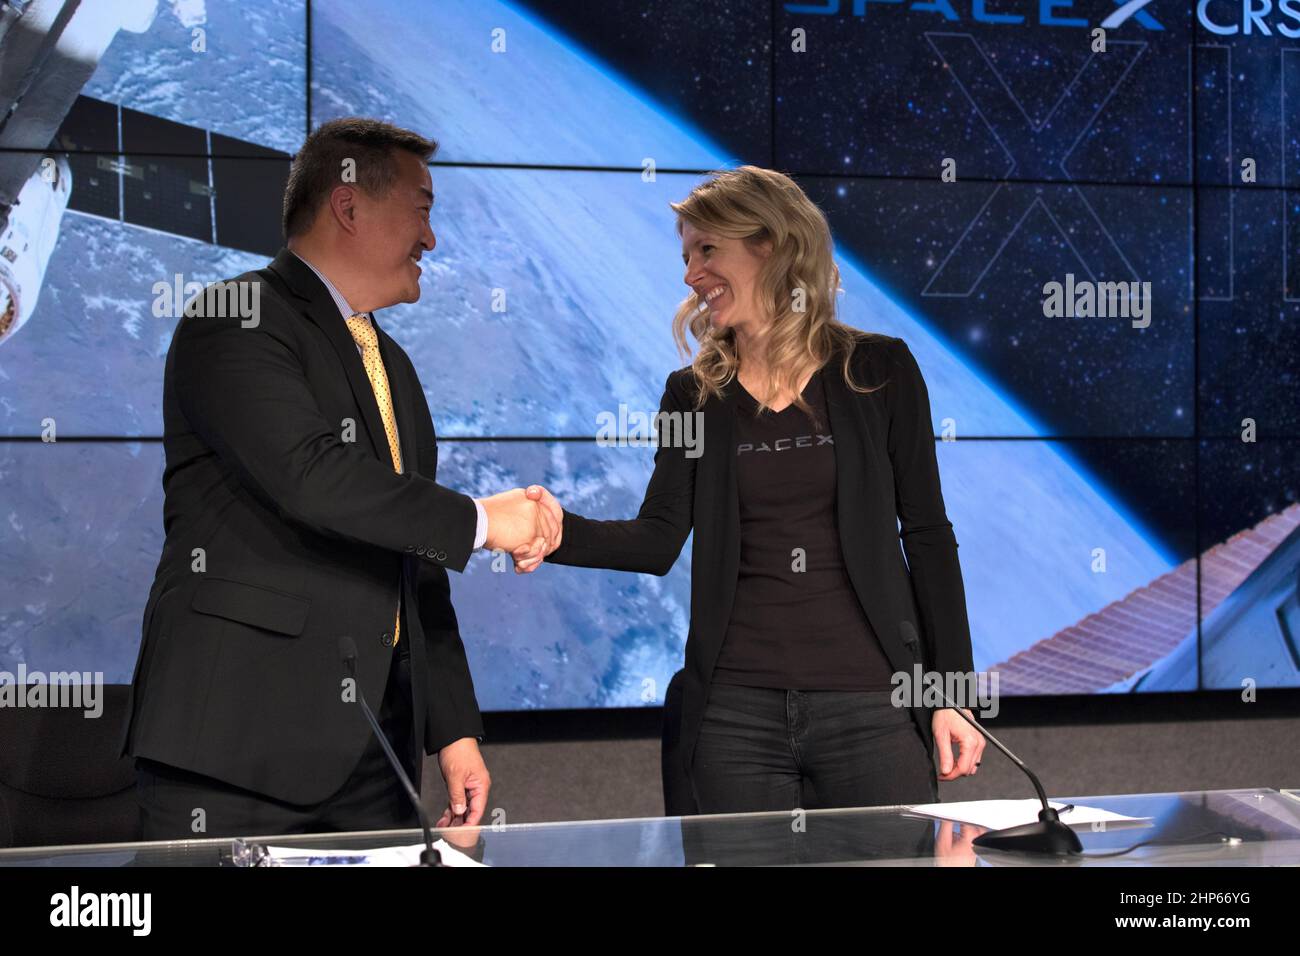 Dans l'auditorium Press site du Kennedy Space Center de la NASA en Floride, de gauche à droite, Ven Feng, responsable du Bureau d'intégration des transports pour le Programme de la Station spatiale internationale, félicite Jessica Jensen, directrice de SpaceX de Dragon Mission Management, à la suite du succès de SpaceX CRS-13. Banque D'Images